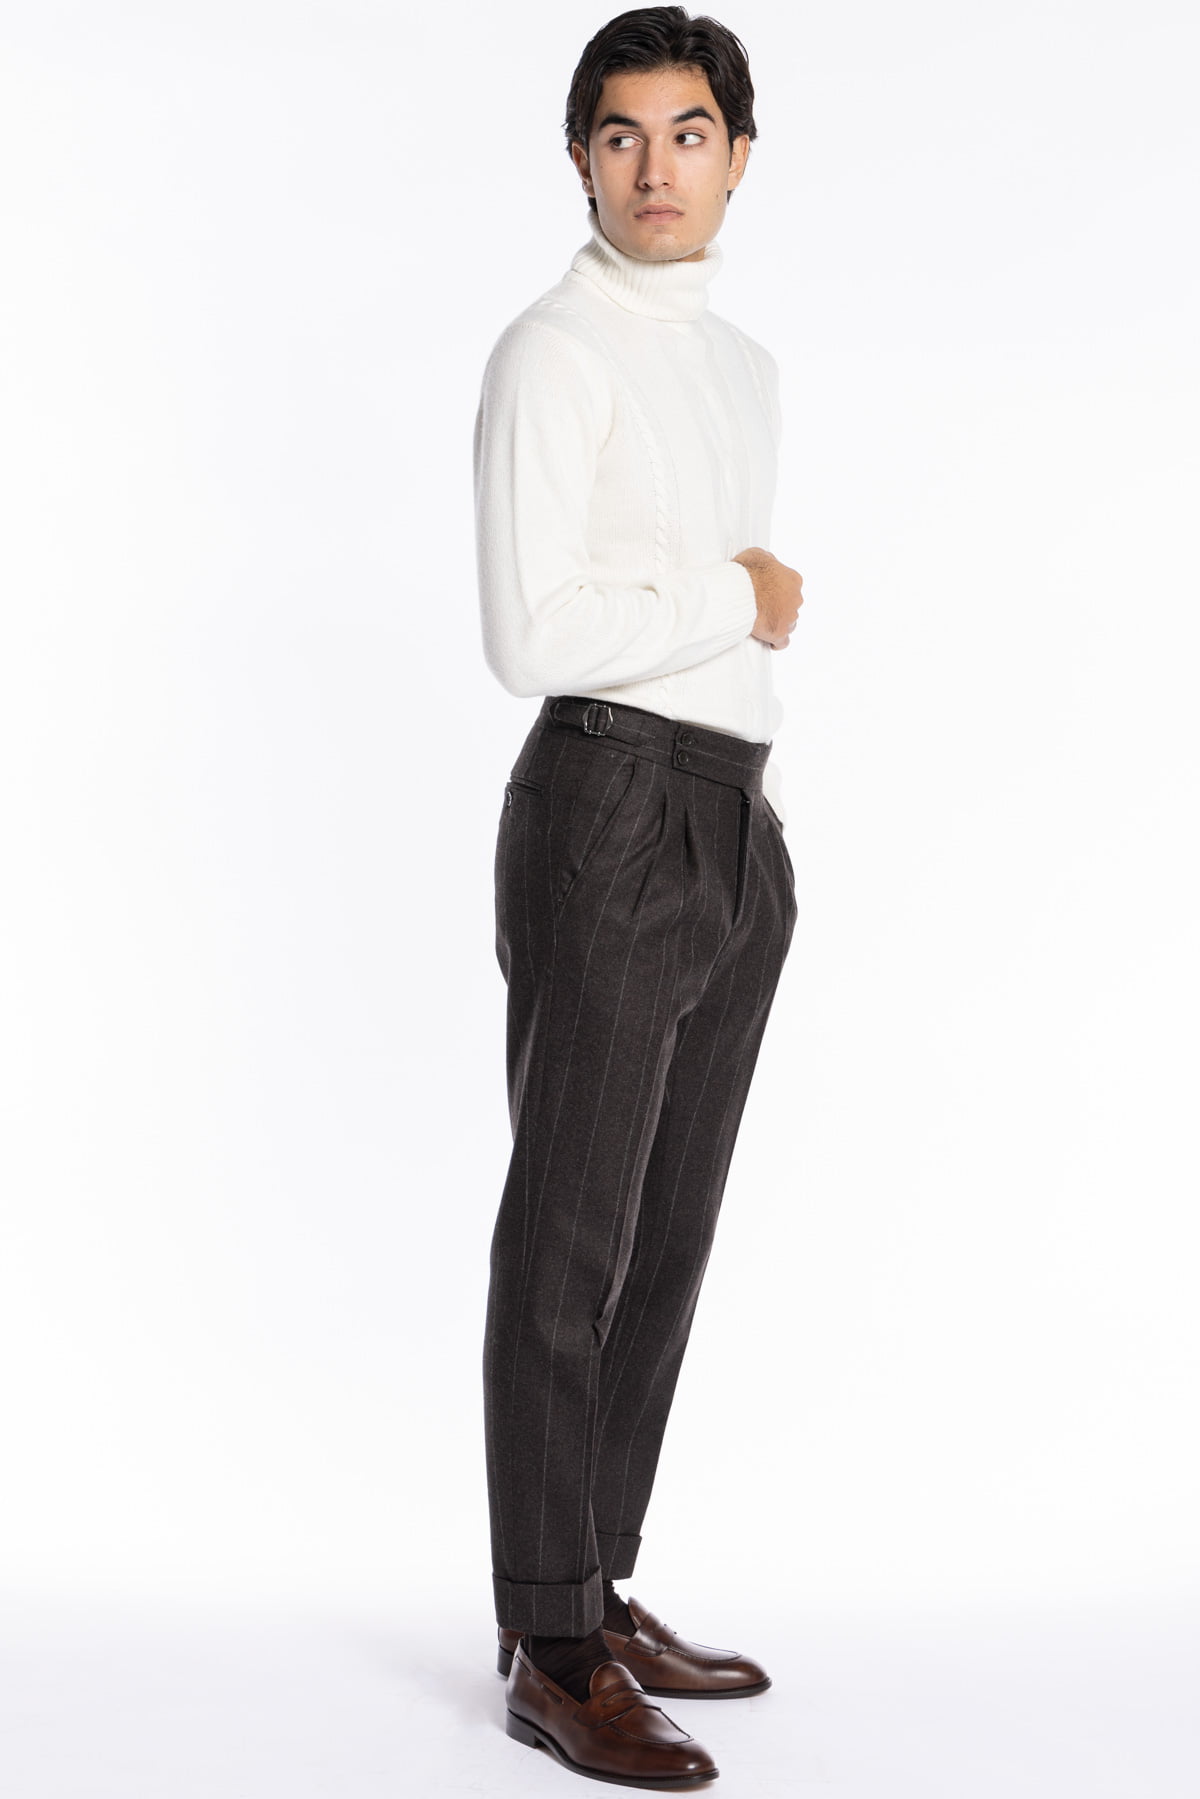 Pantalone uomo marrone gessato vita alta tasca america in lana flanella Vitale Barberis Canonico con doppia pinces e fibbie laterali regolabili